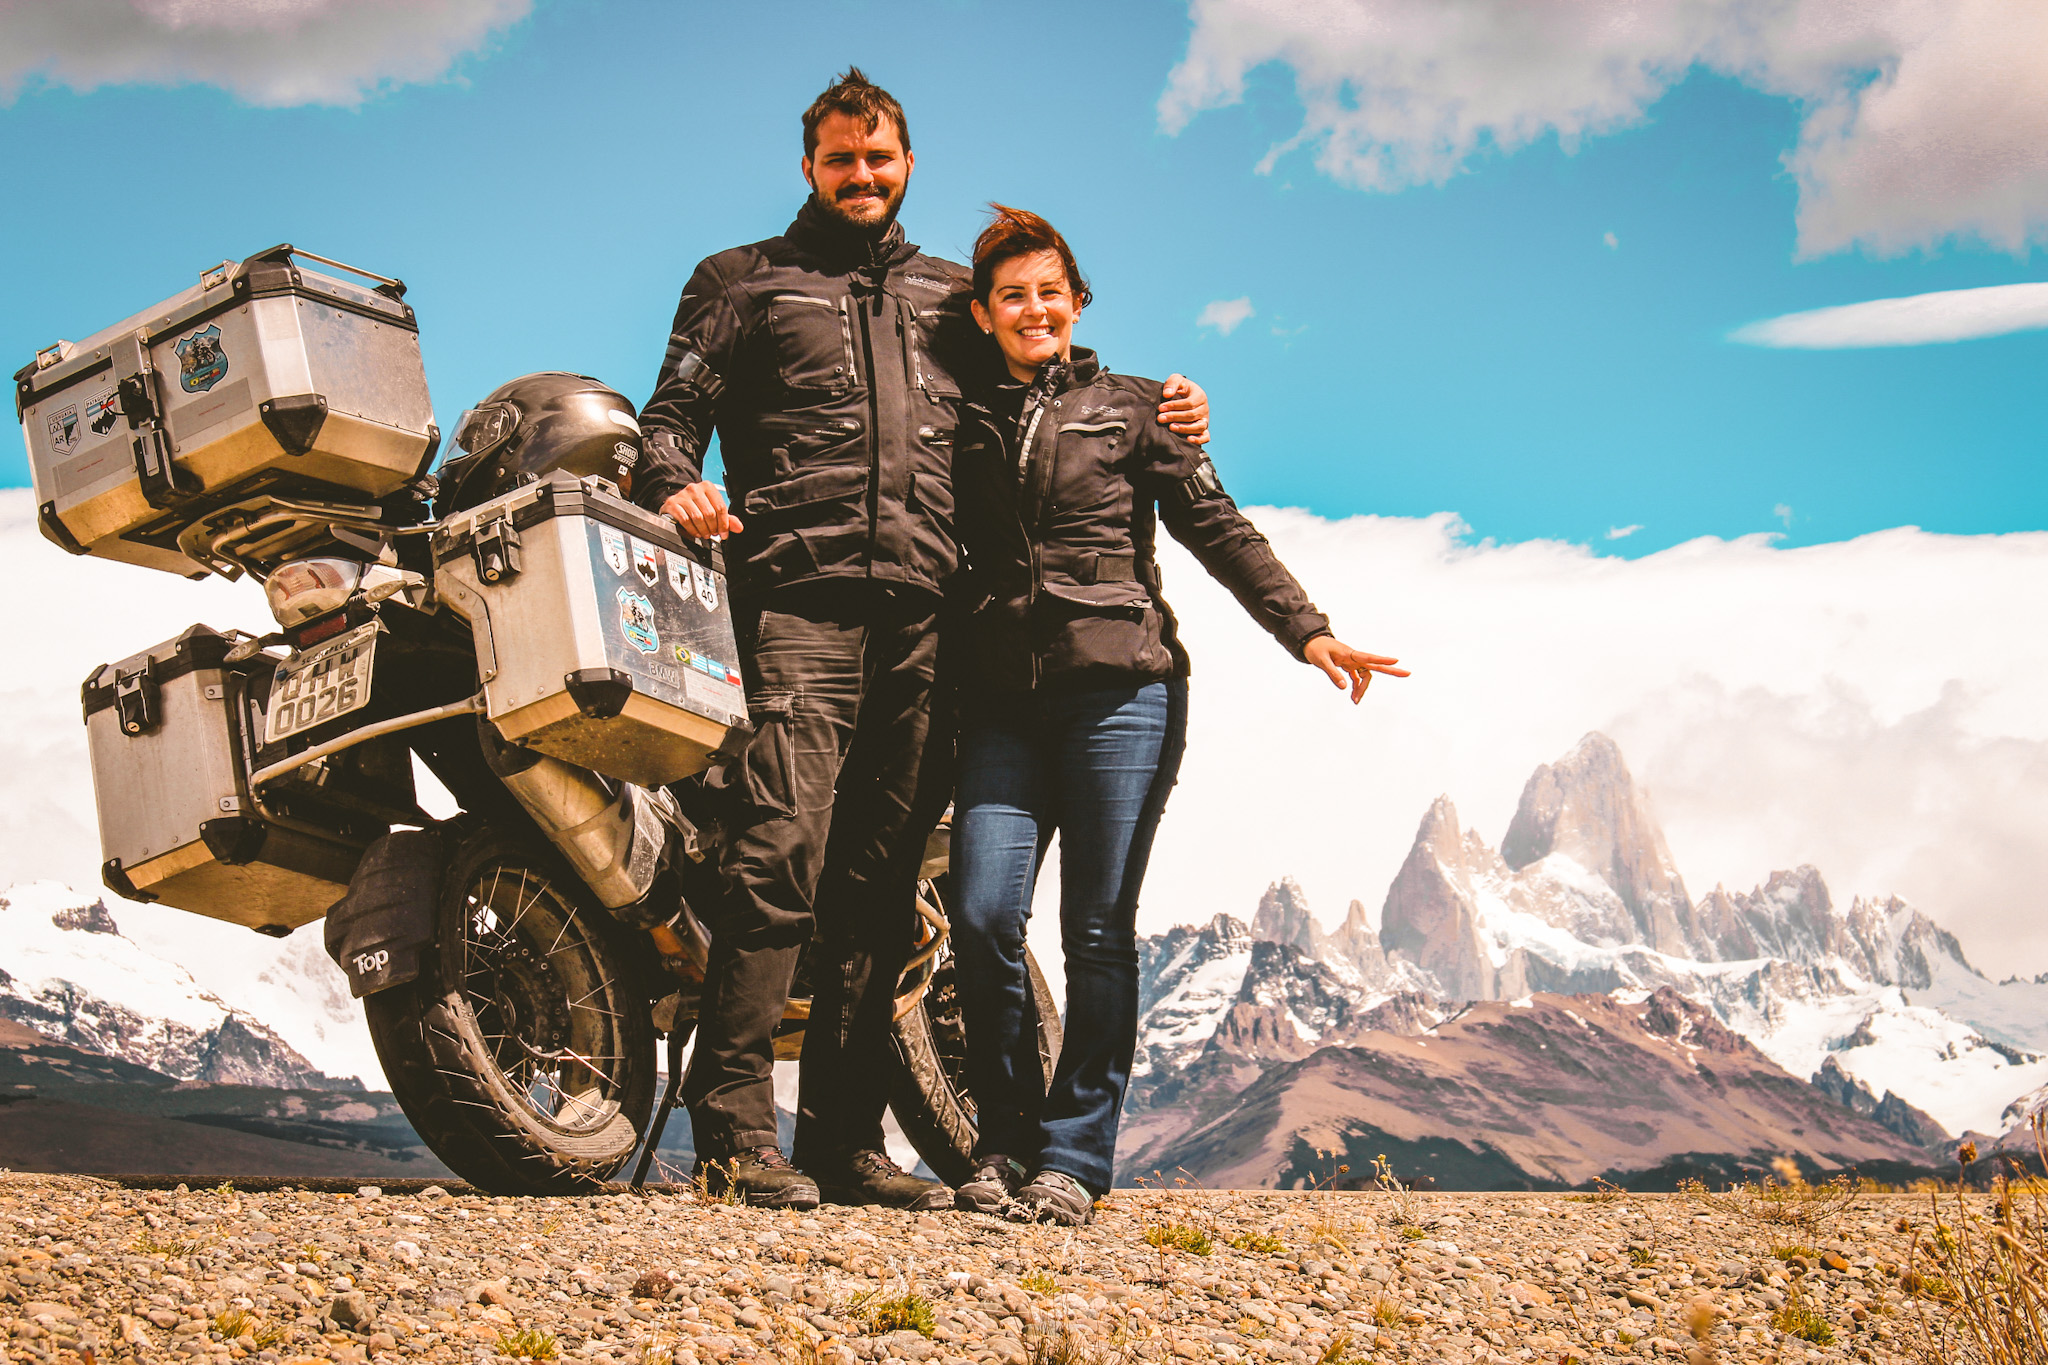 Três rotas épicas para uma aventura de moto na América do Sul